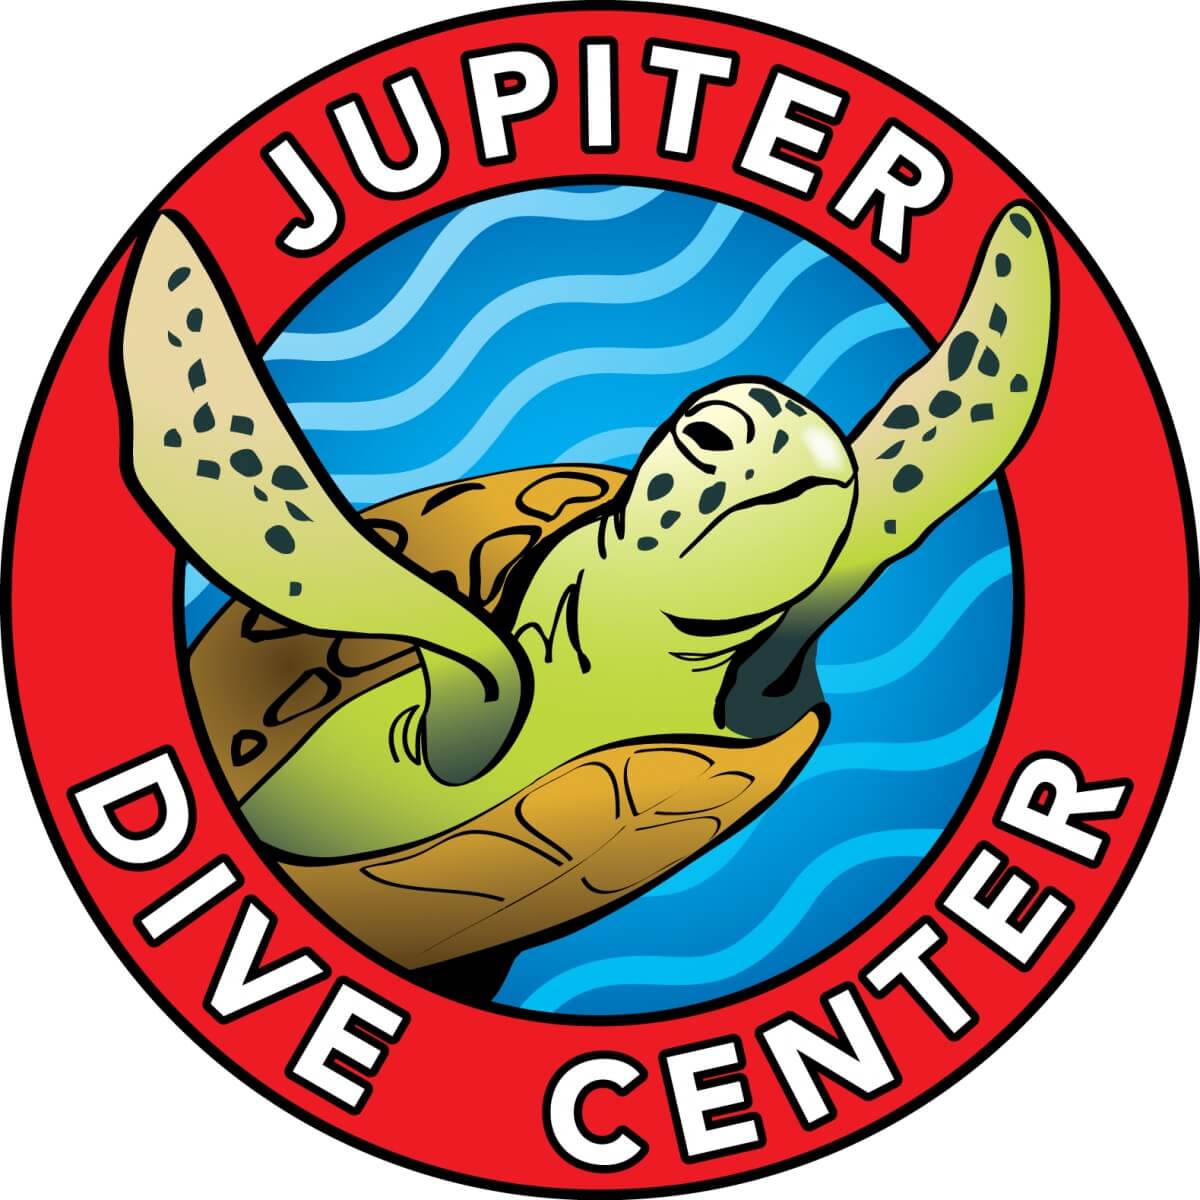 The Jupiter Dive Center